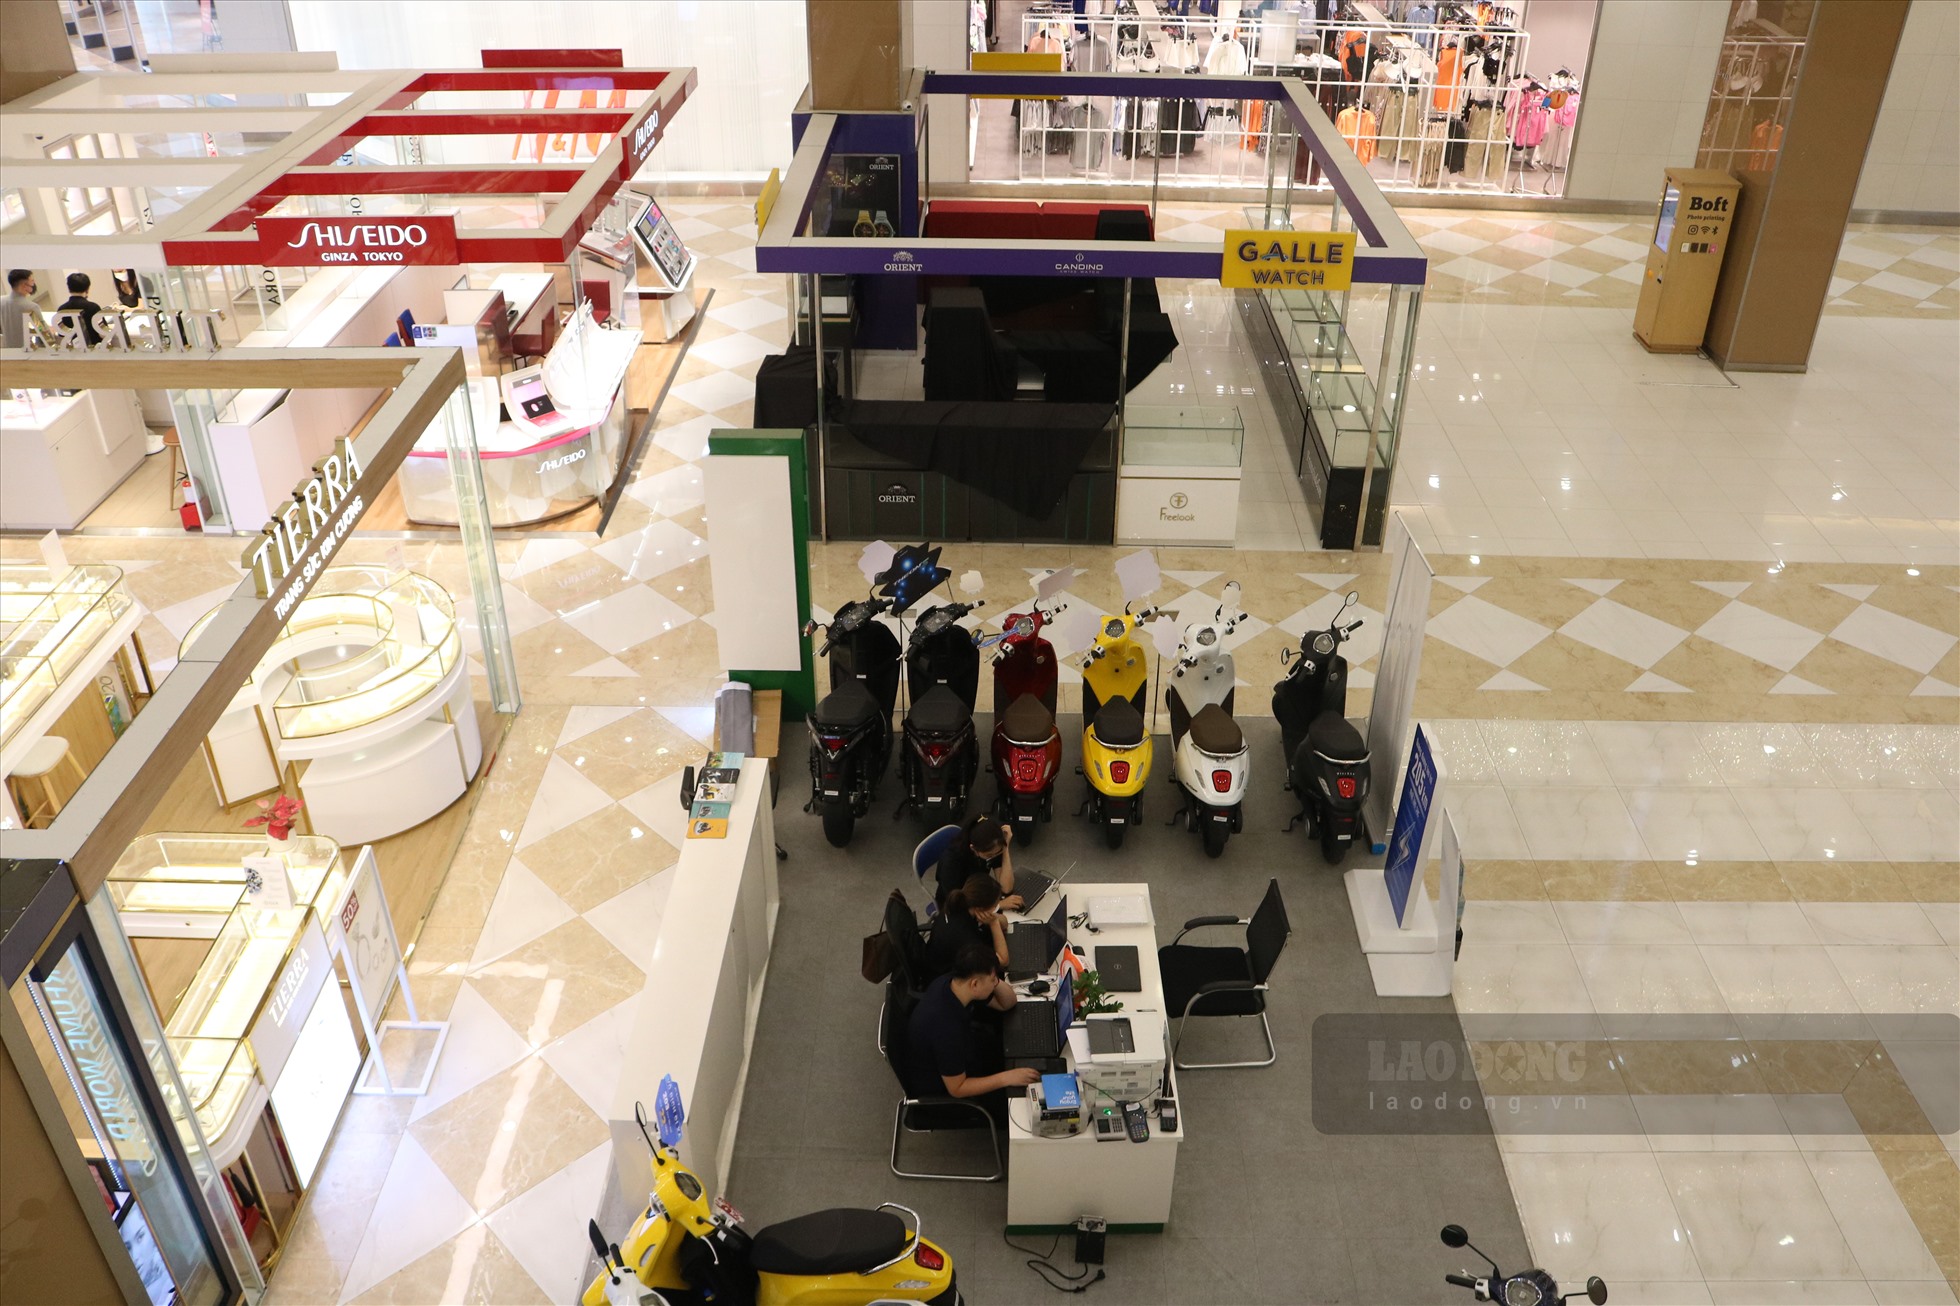 Phần đông người ở trung tâm thương mại là nhân viên của các cửa hàng.